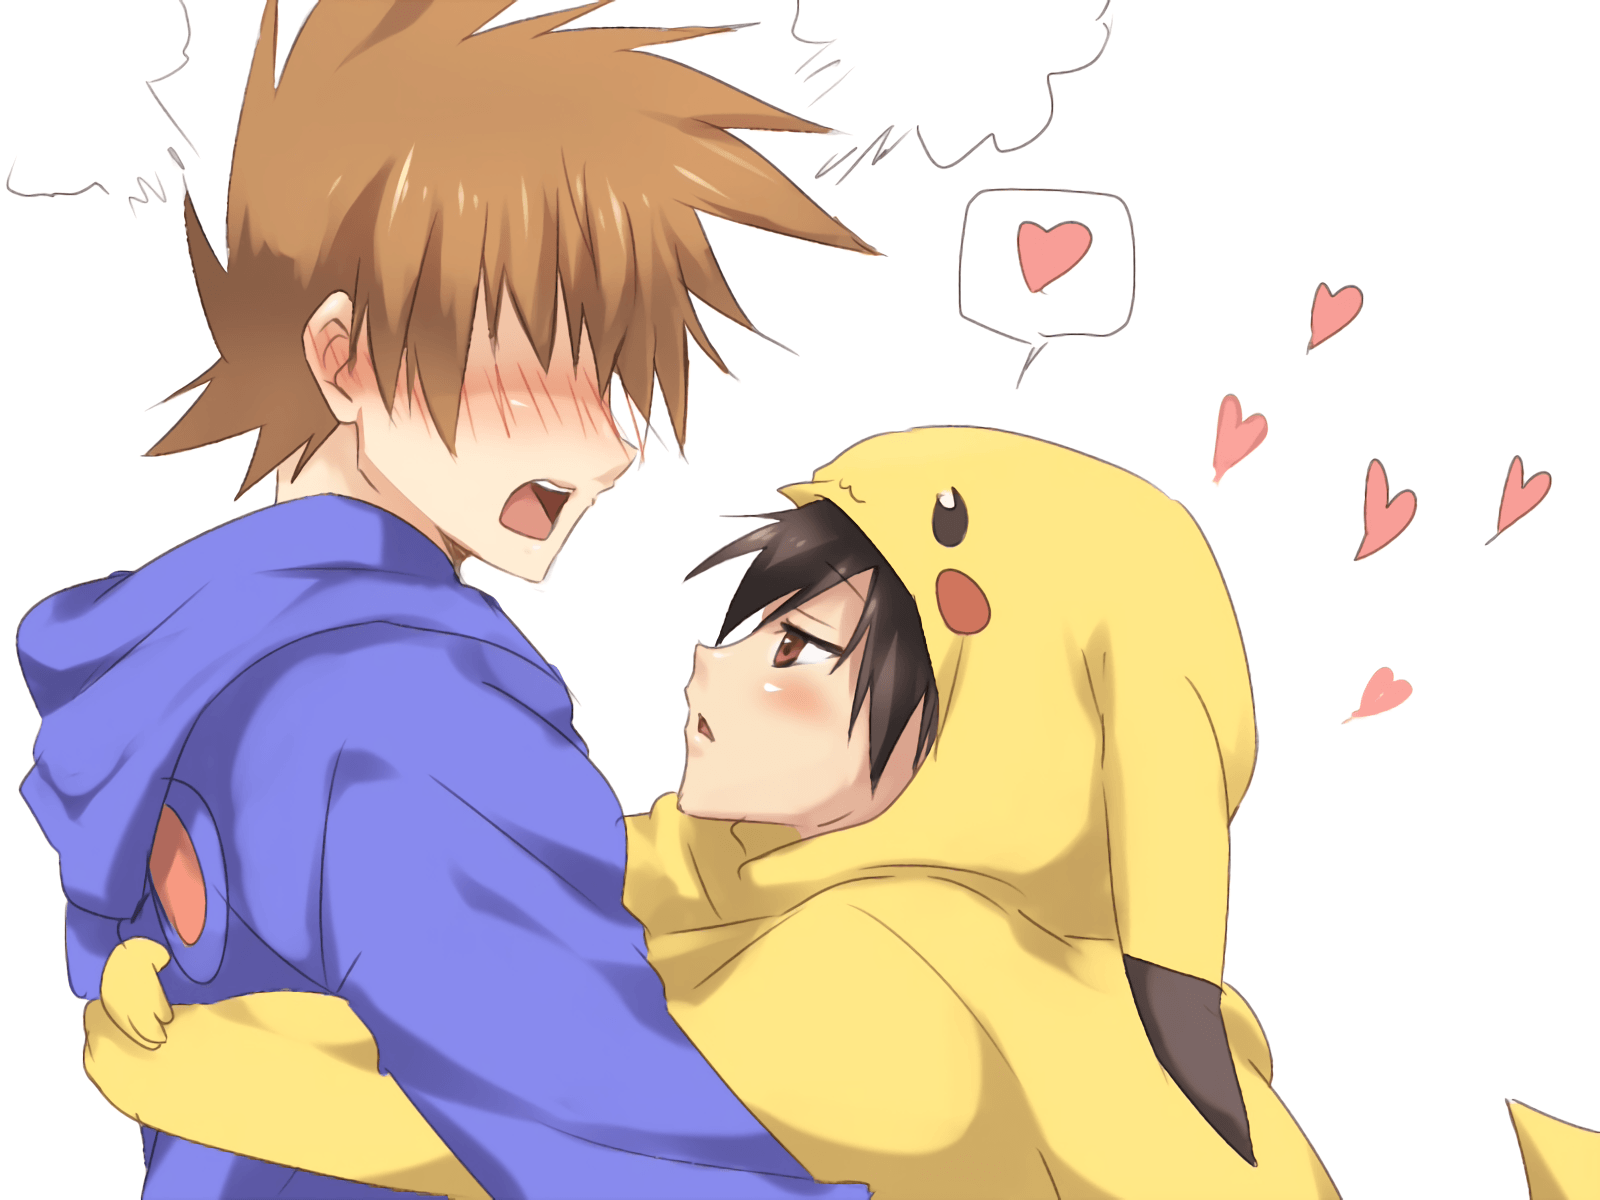 cuddling in bed gay anime boys